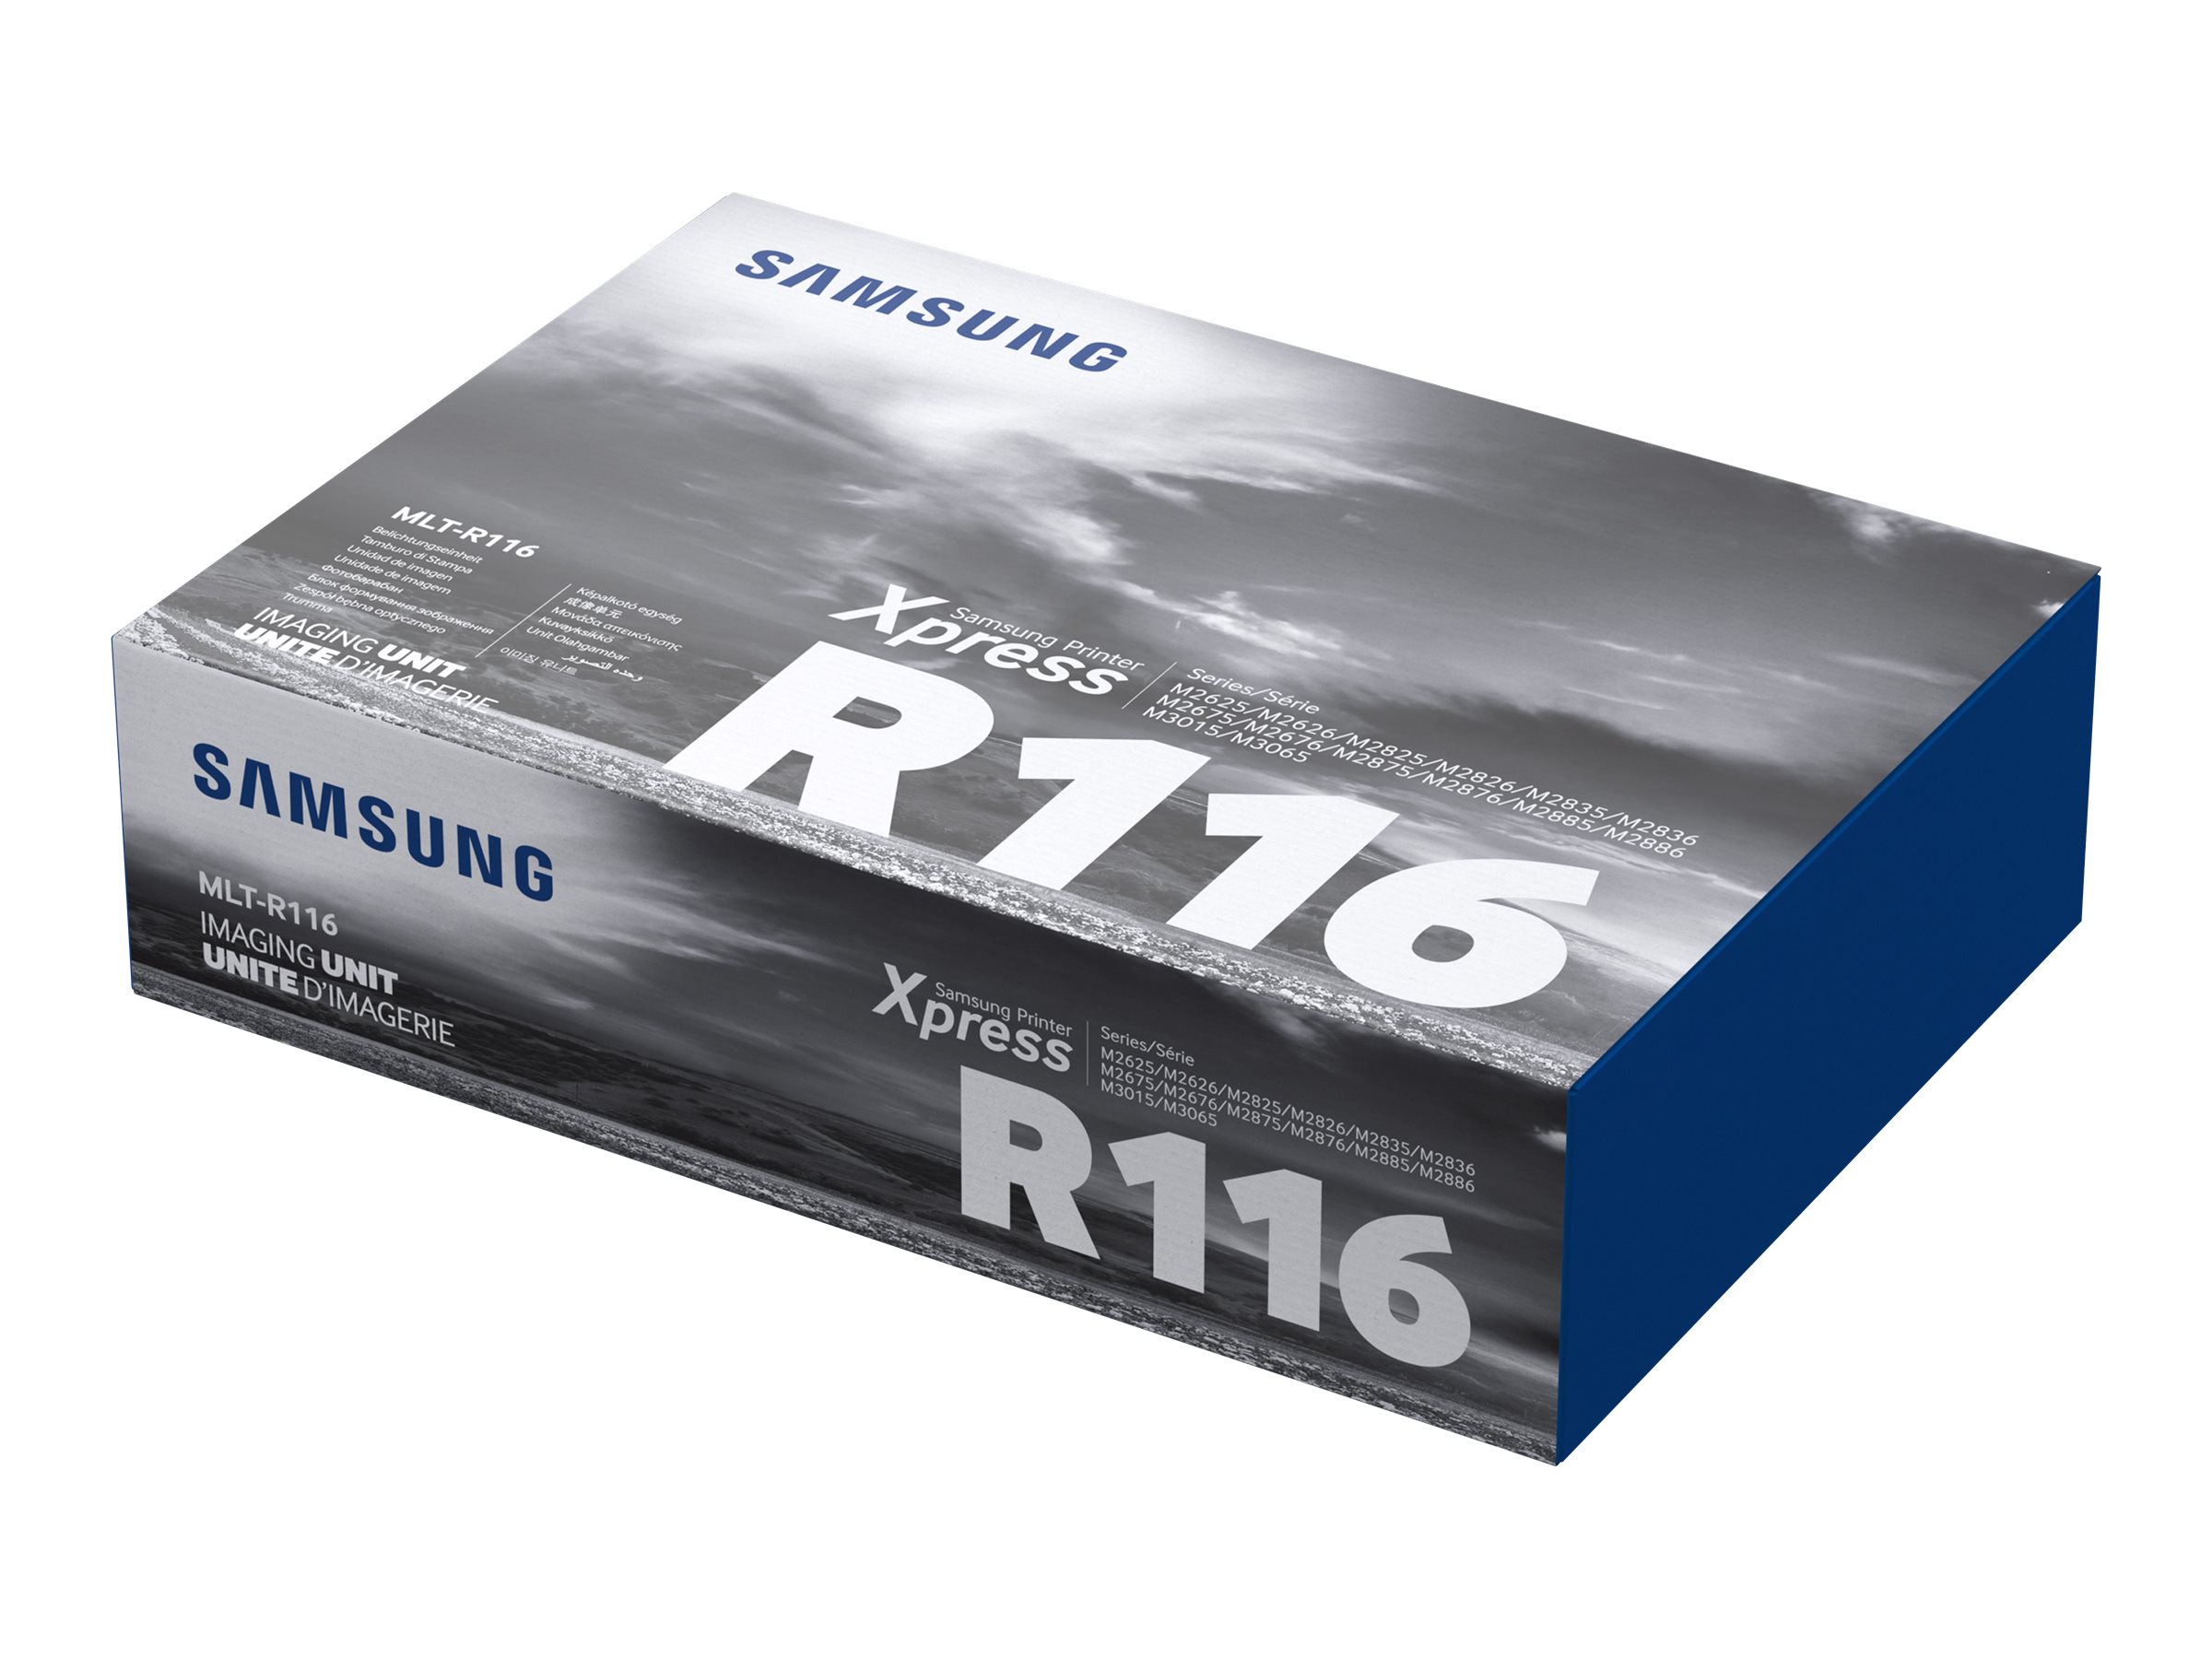 Samsung MLT-R116 - Schwarz - Original - Druckerbildeinheit - fr Xpress SL-M2625, M2626, M2675, M2676, M2825, M2826, M2836, M287